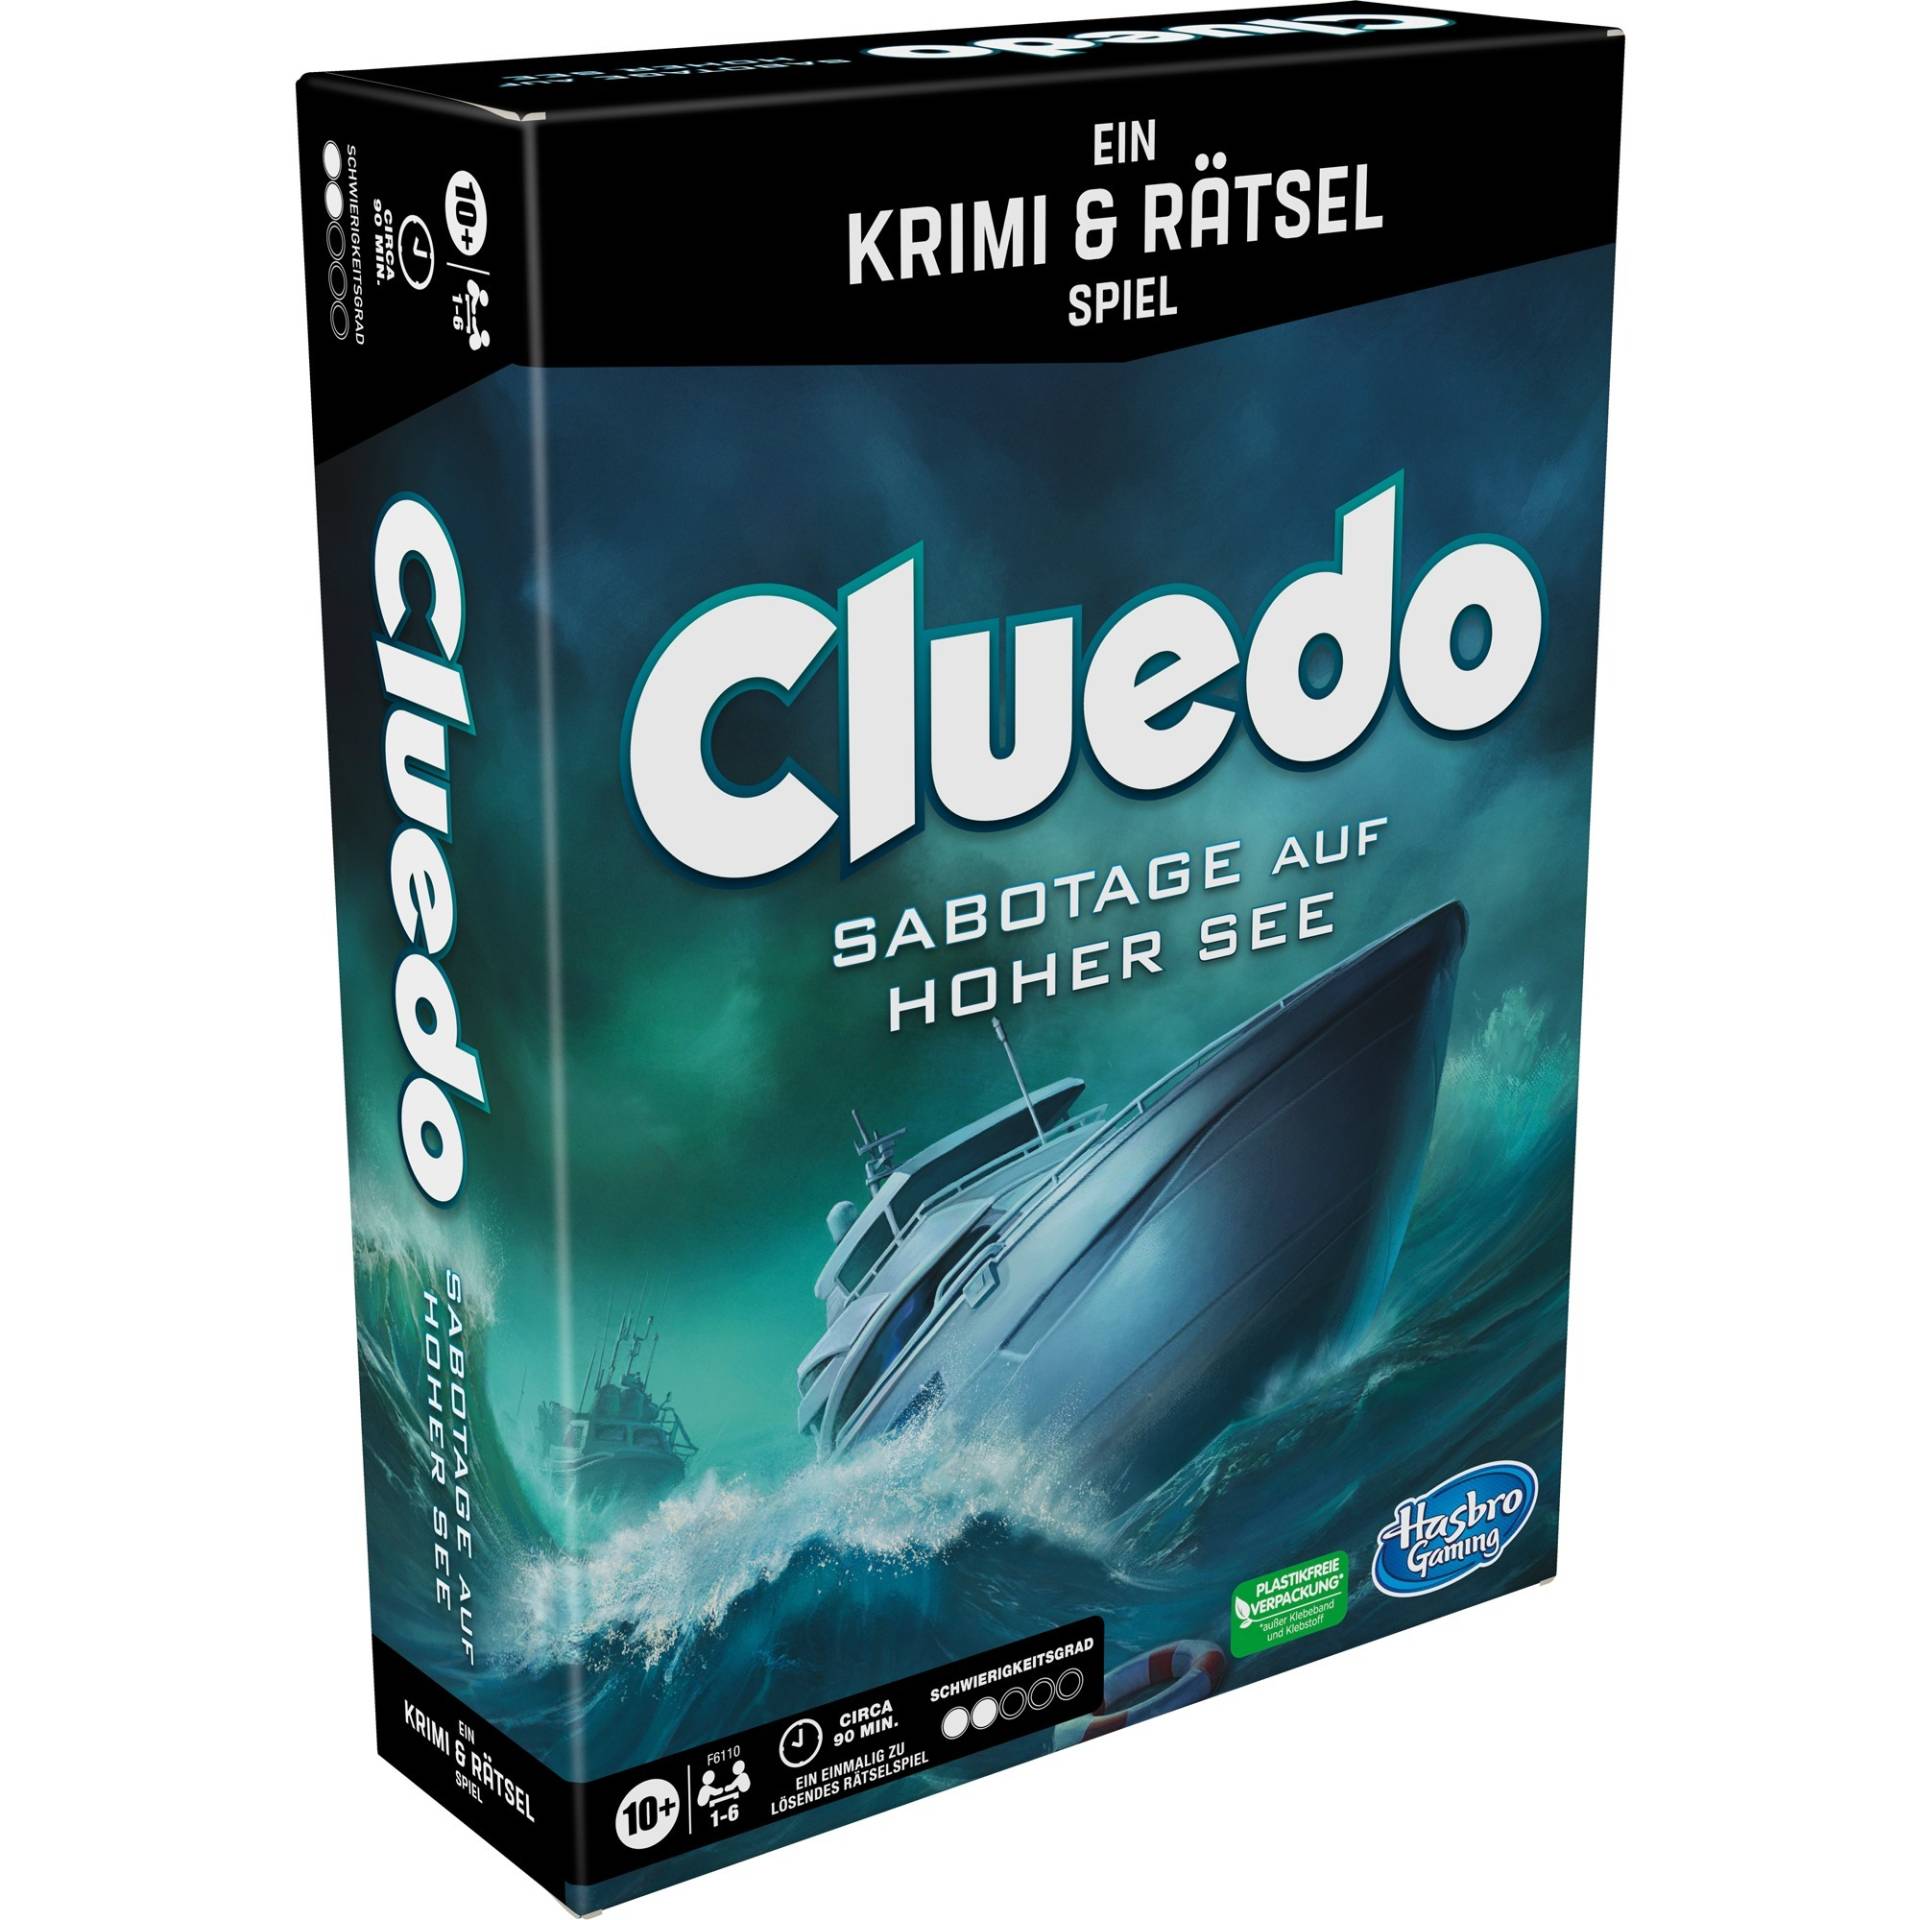 Cluedo Sabotage auf hoher See, Brettspiel von Hasbro